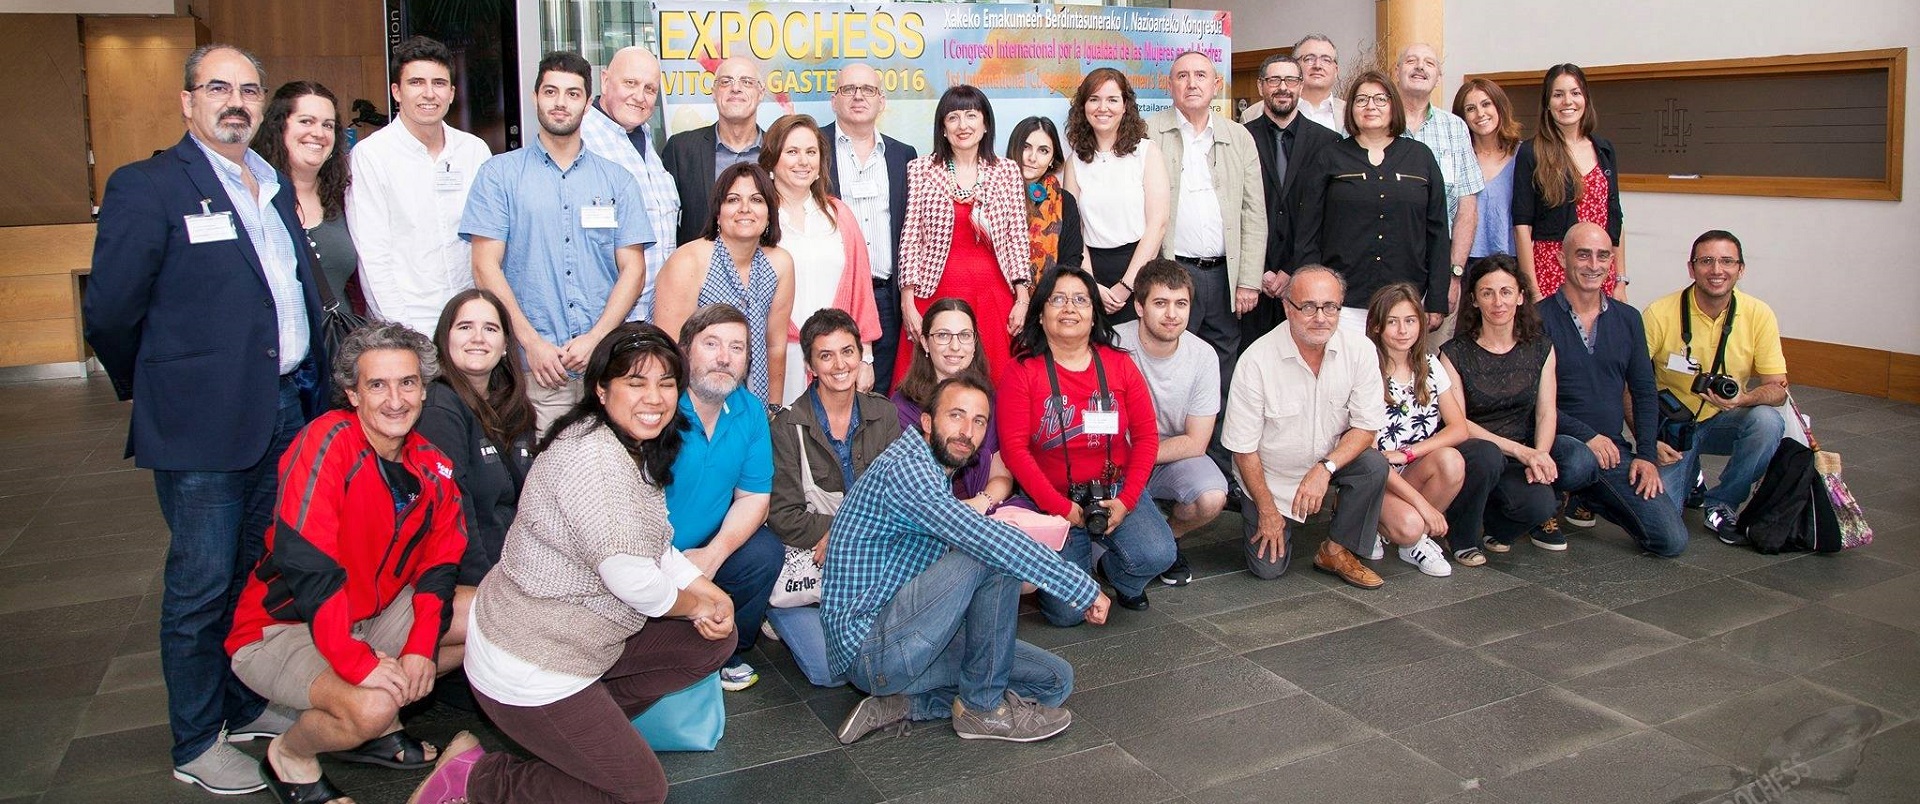 I Congreso Internacional por la Igualdad de las Mujeres en el Ajedrez EXPOCHESS 2016